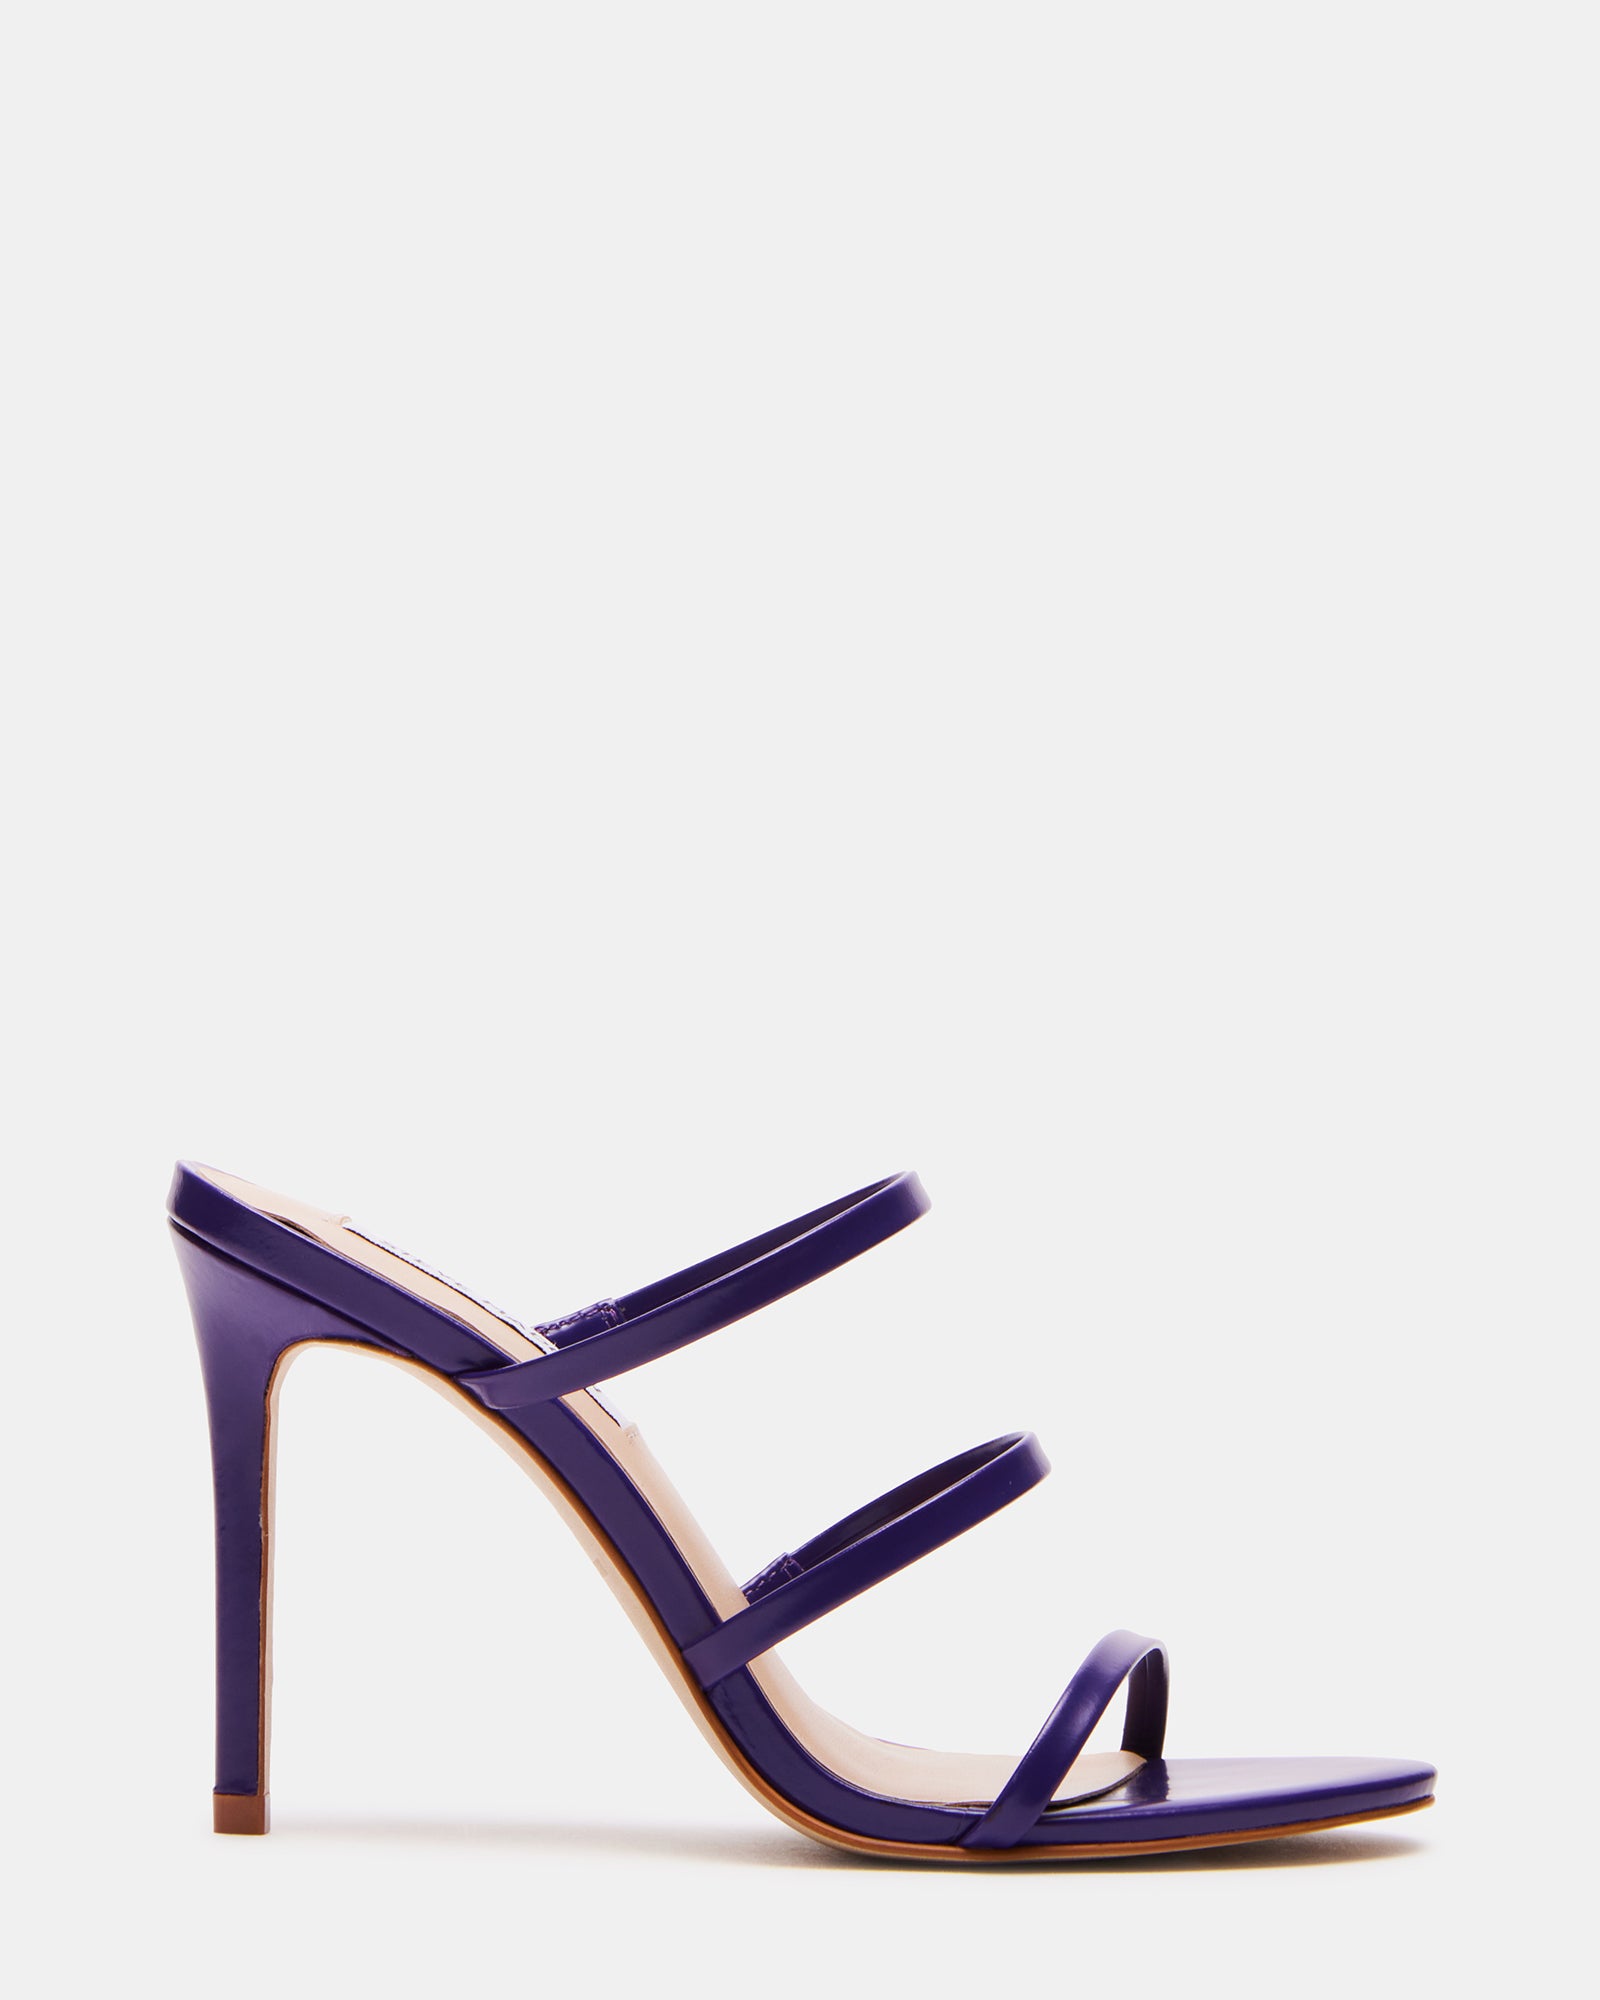 Sarah Jessica Parker Bitten Brand Dark Purple Heels Shoes Size 10 | eBay